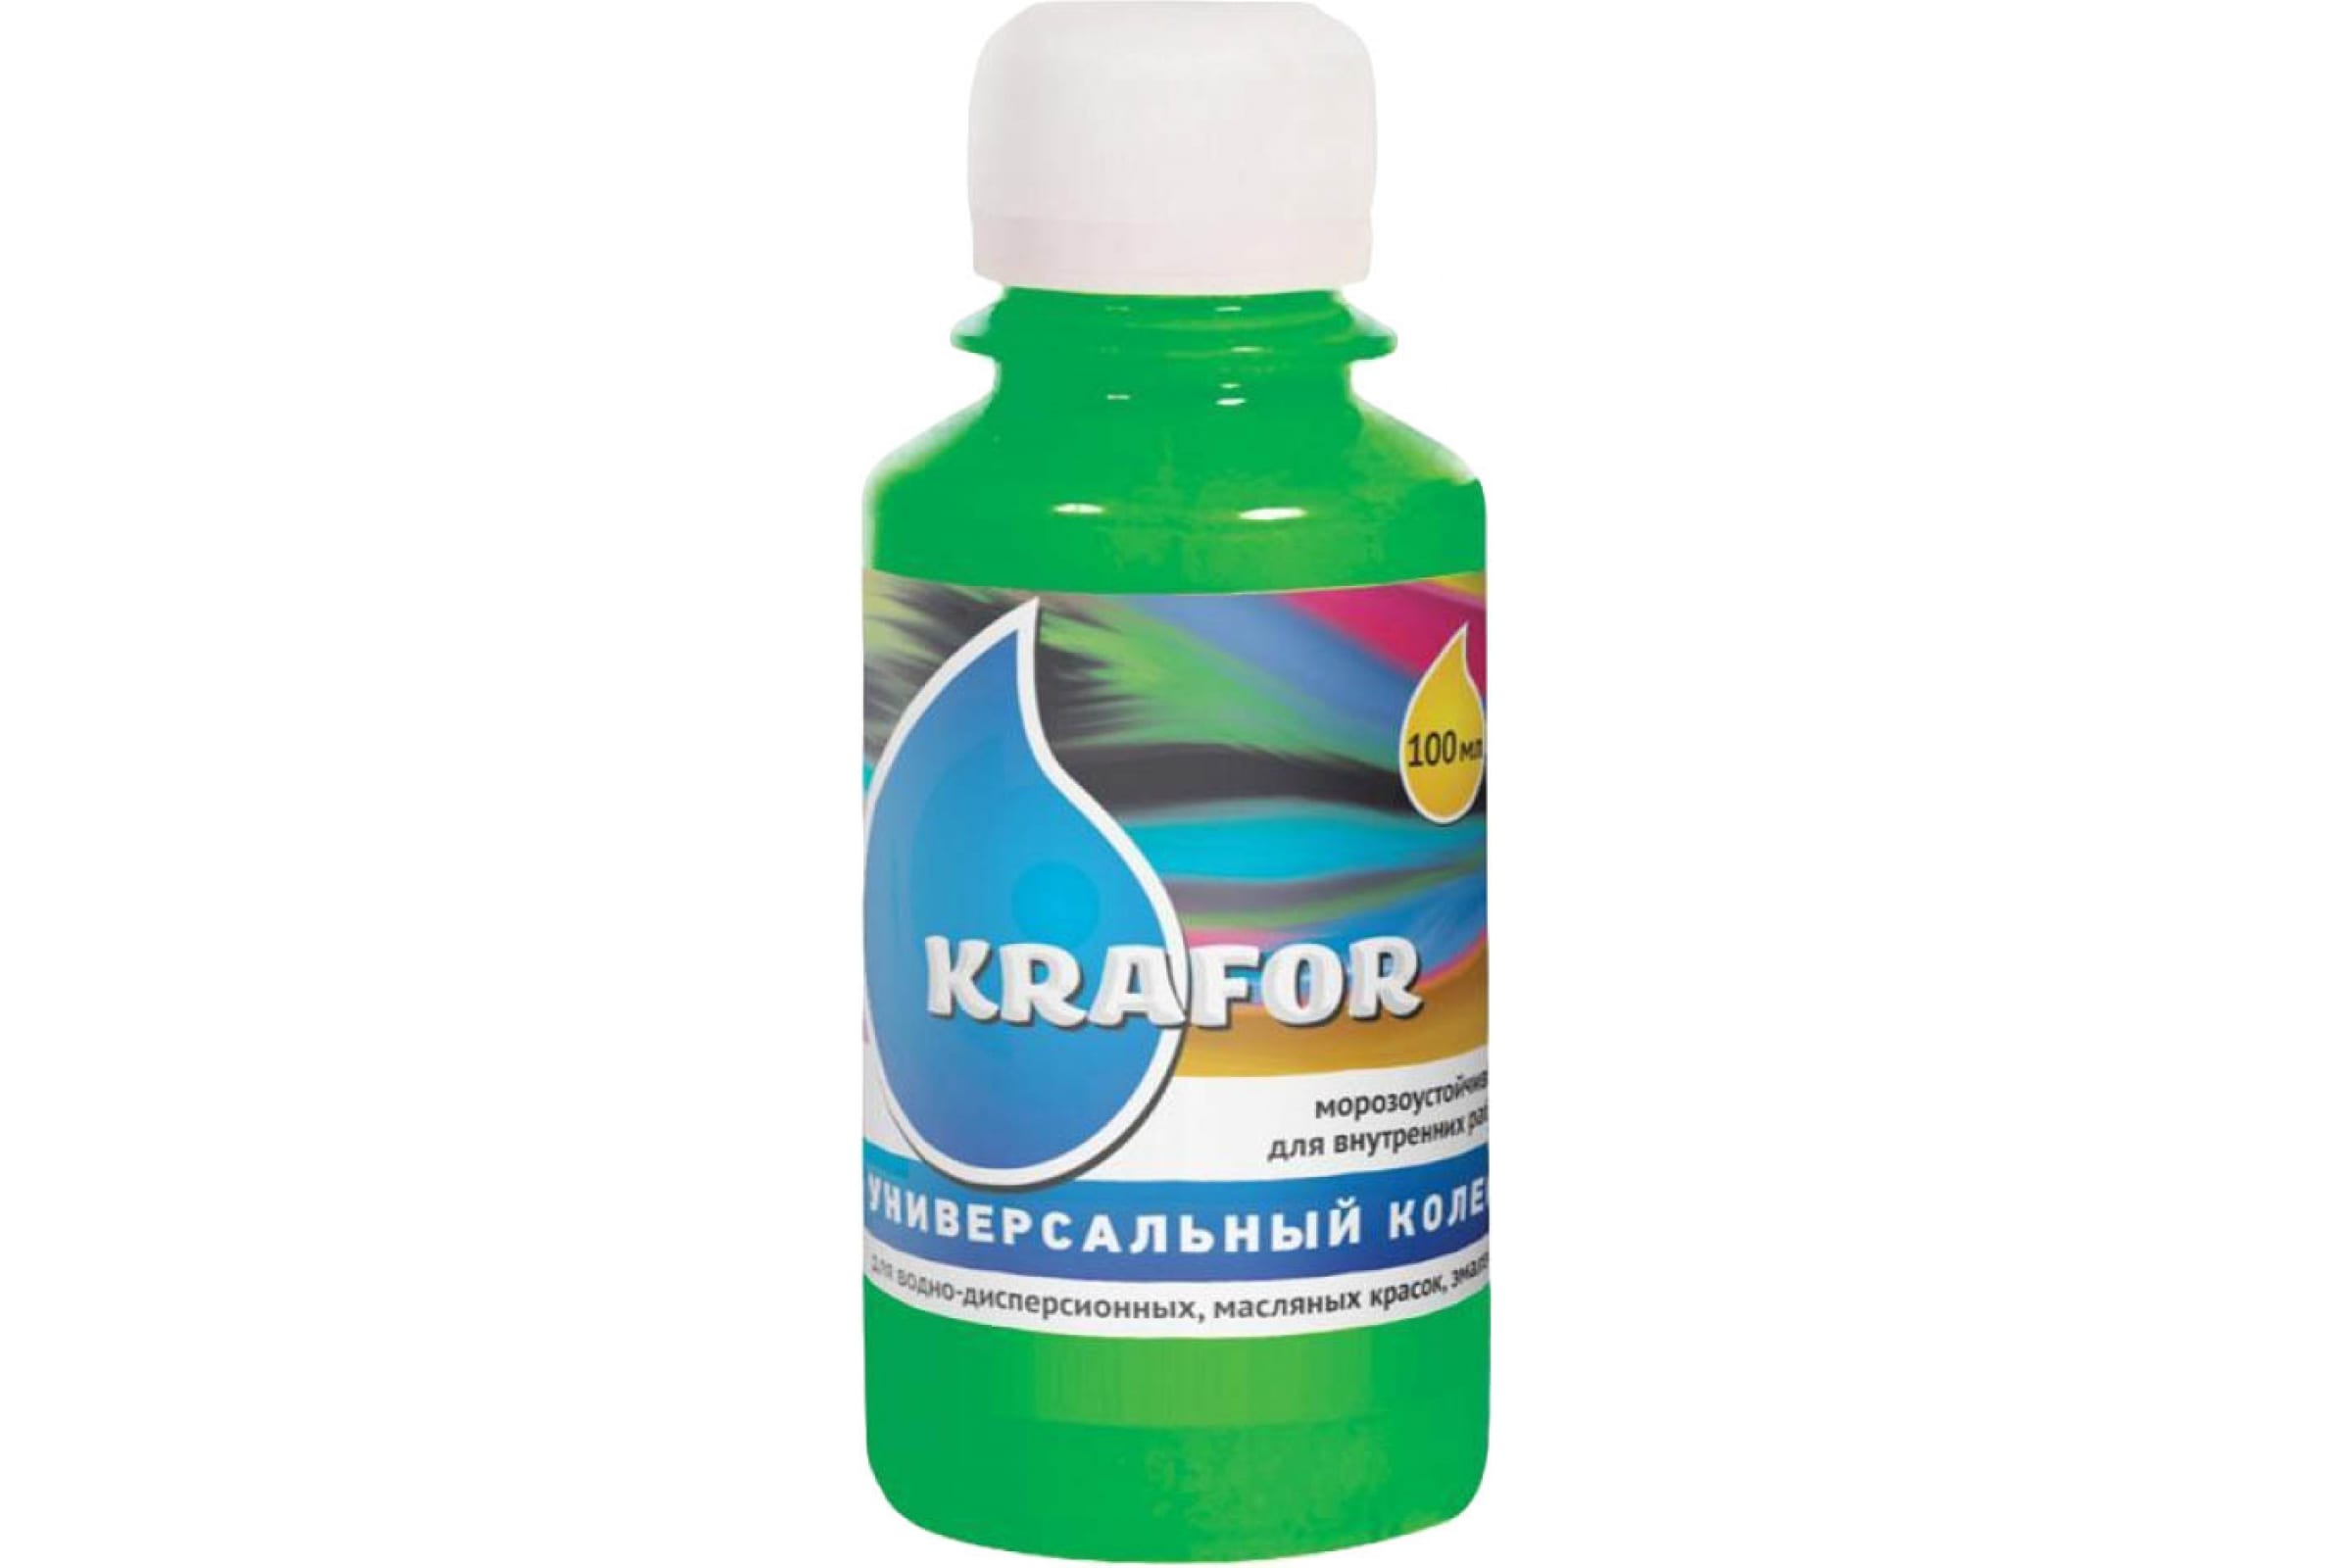 Колер Krafor №24 универсальный зеленый 100 мл